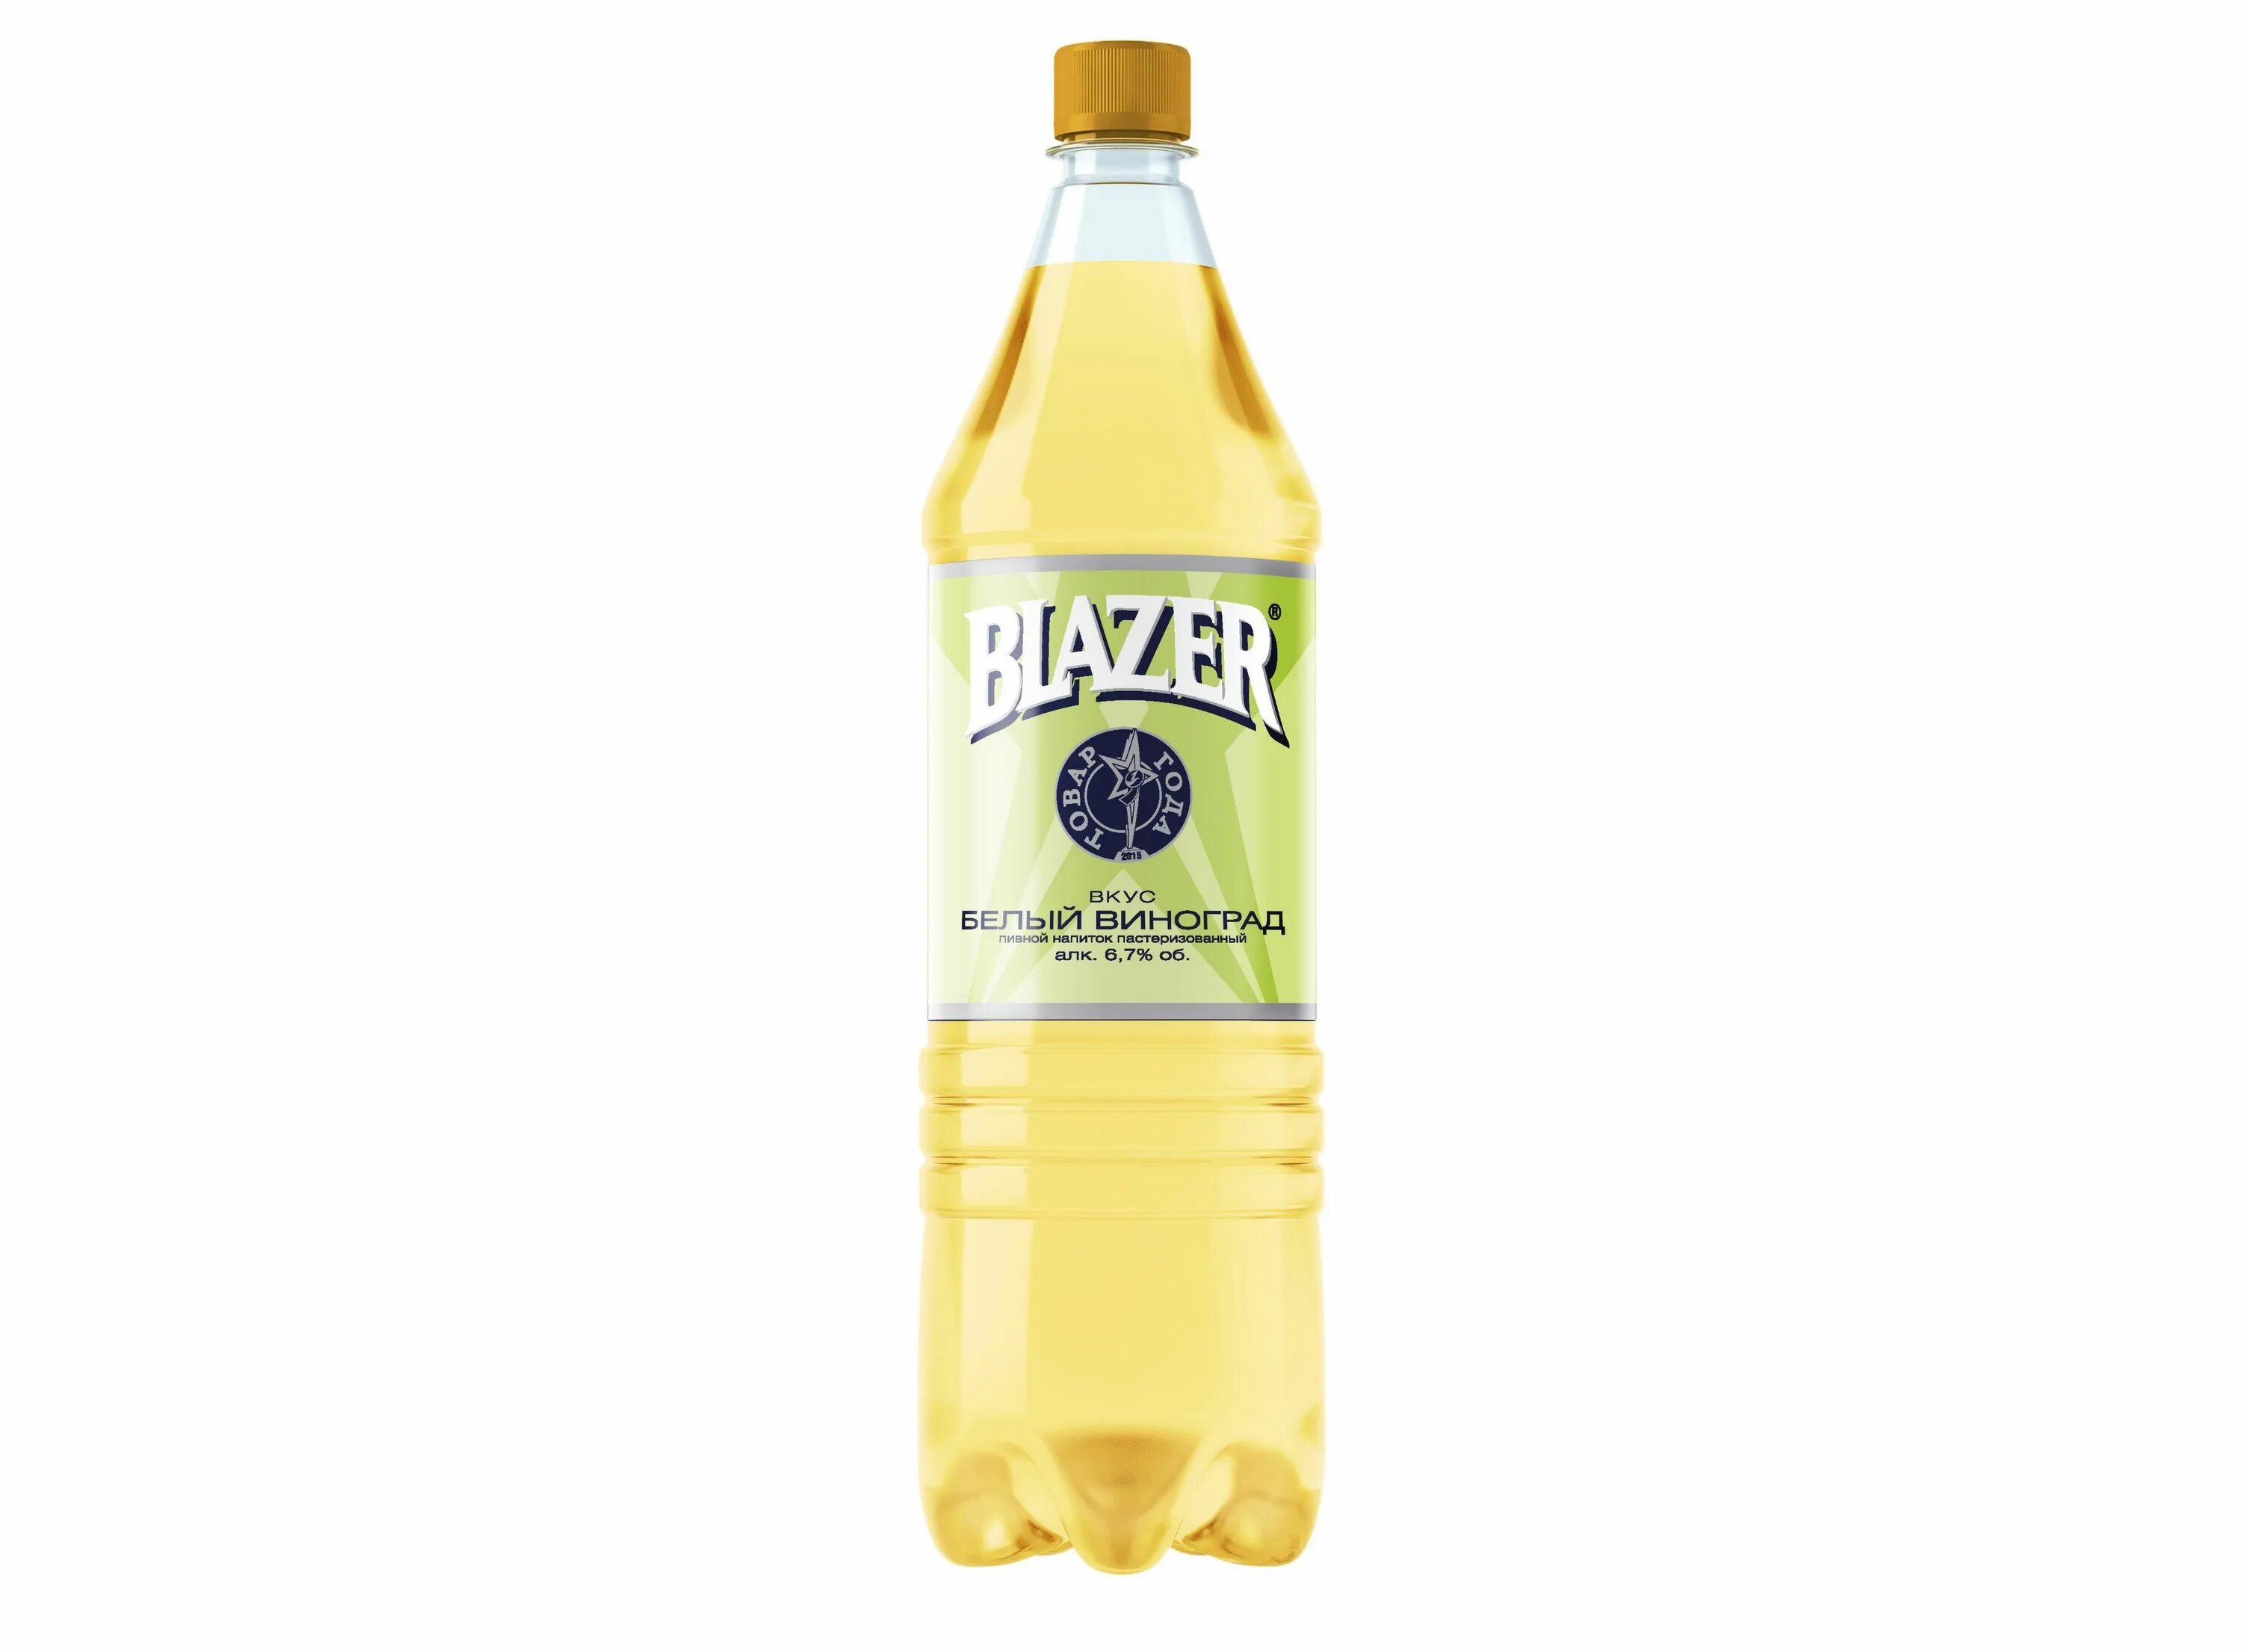 Напиток Фанкер пивной 1.3. Пивной напиток "Beer Lazer лимон" 6,7% ПЭТ 1,3л.. Аллигатор пивной напиток 1,35 л. Пивной напиток "Beer Lazer вишня" 6,7% ПЭТ 1,3л..